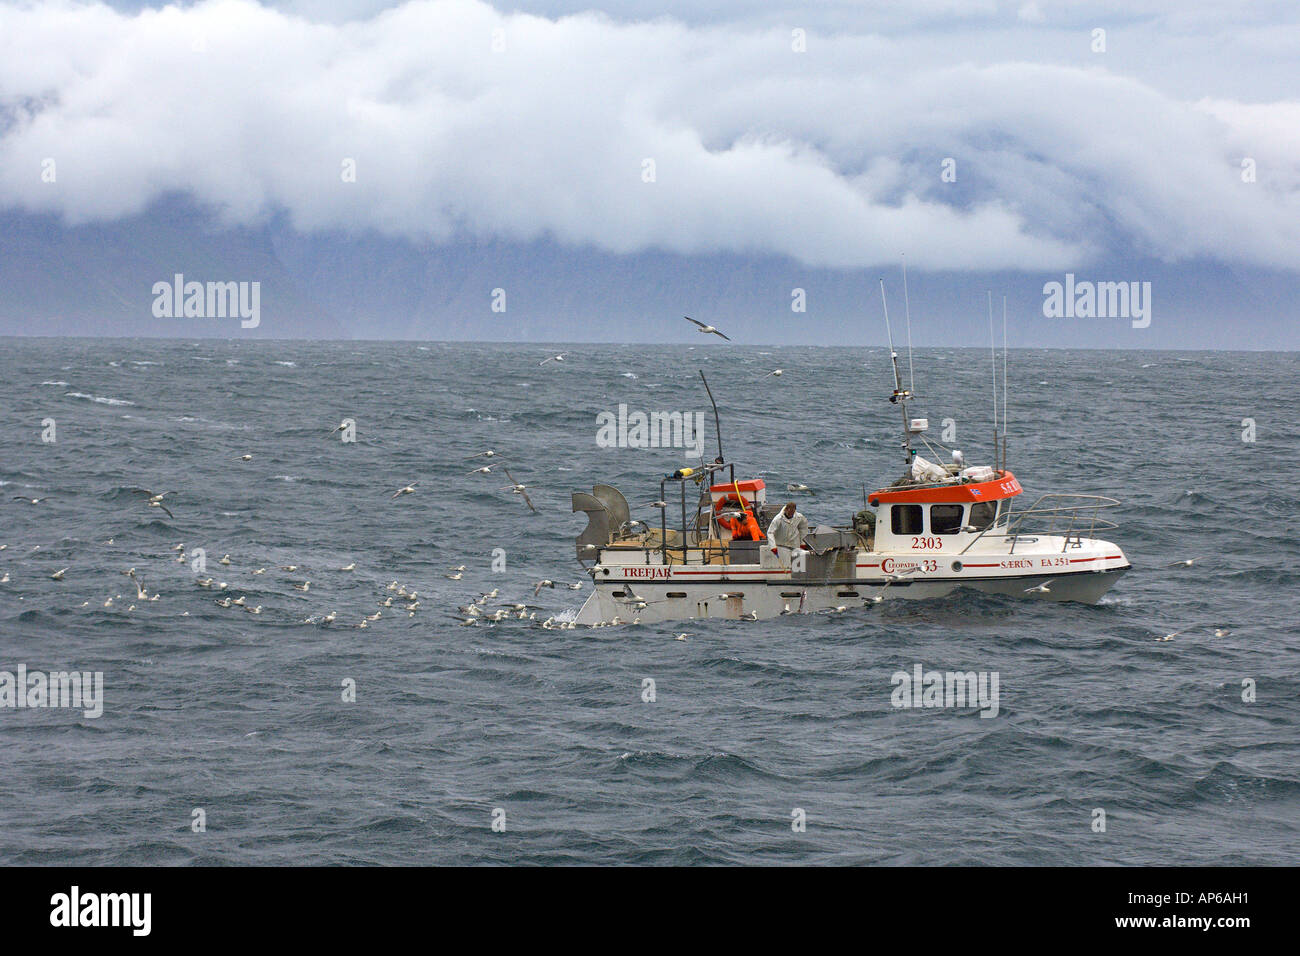 Isländische Langleinen Fischereifahrzeug aus Norden Islands Juli 2006 Stockfoto